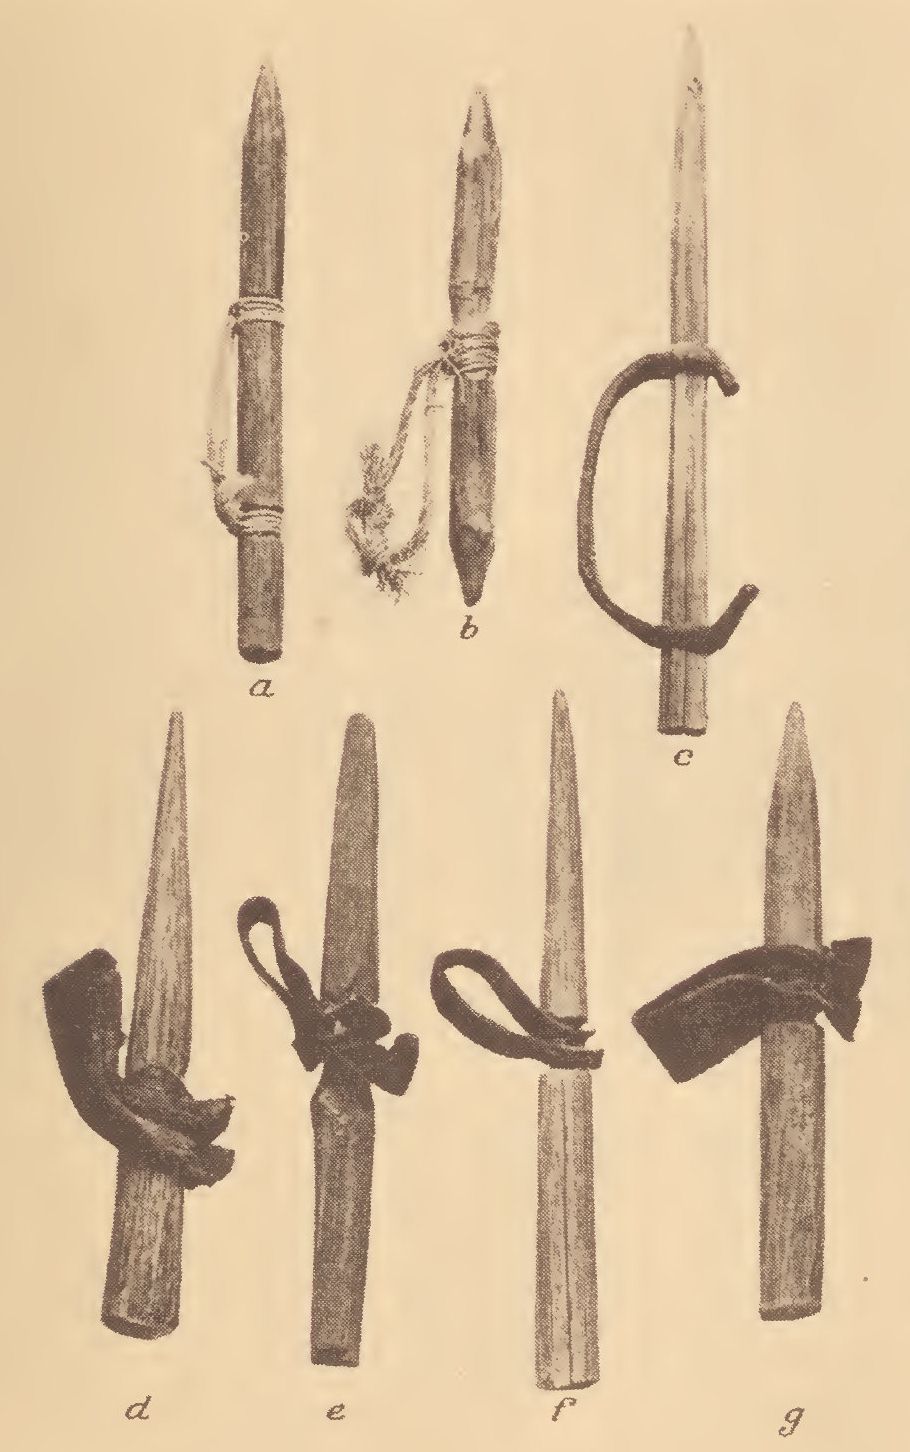 powhatan weapons